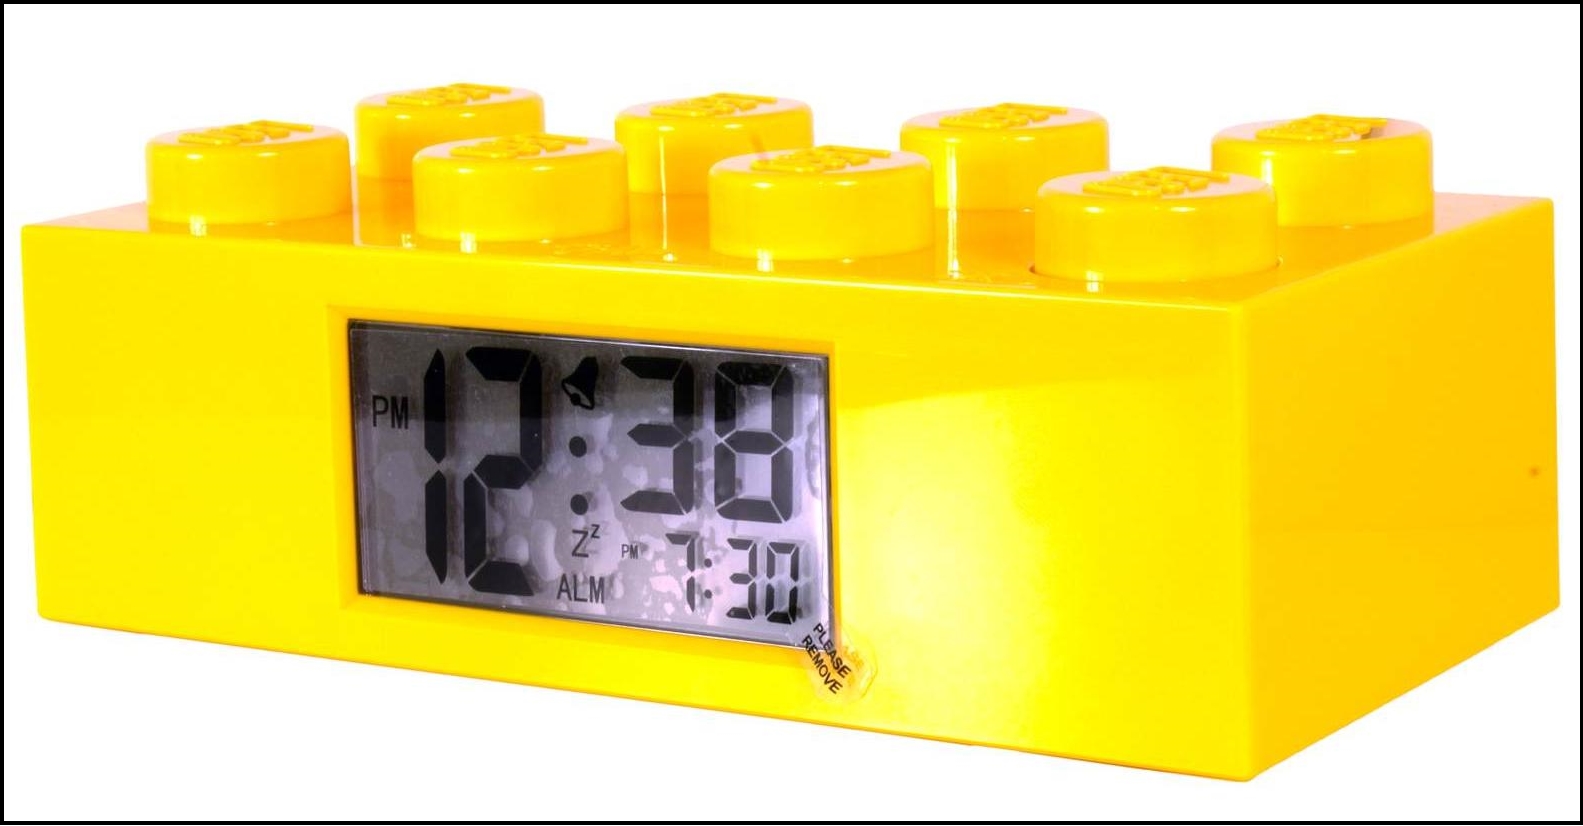 Réveil Lego Lucy à 35,90€ - Achat cadeau Geek - Idée cadeau homme